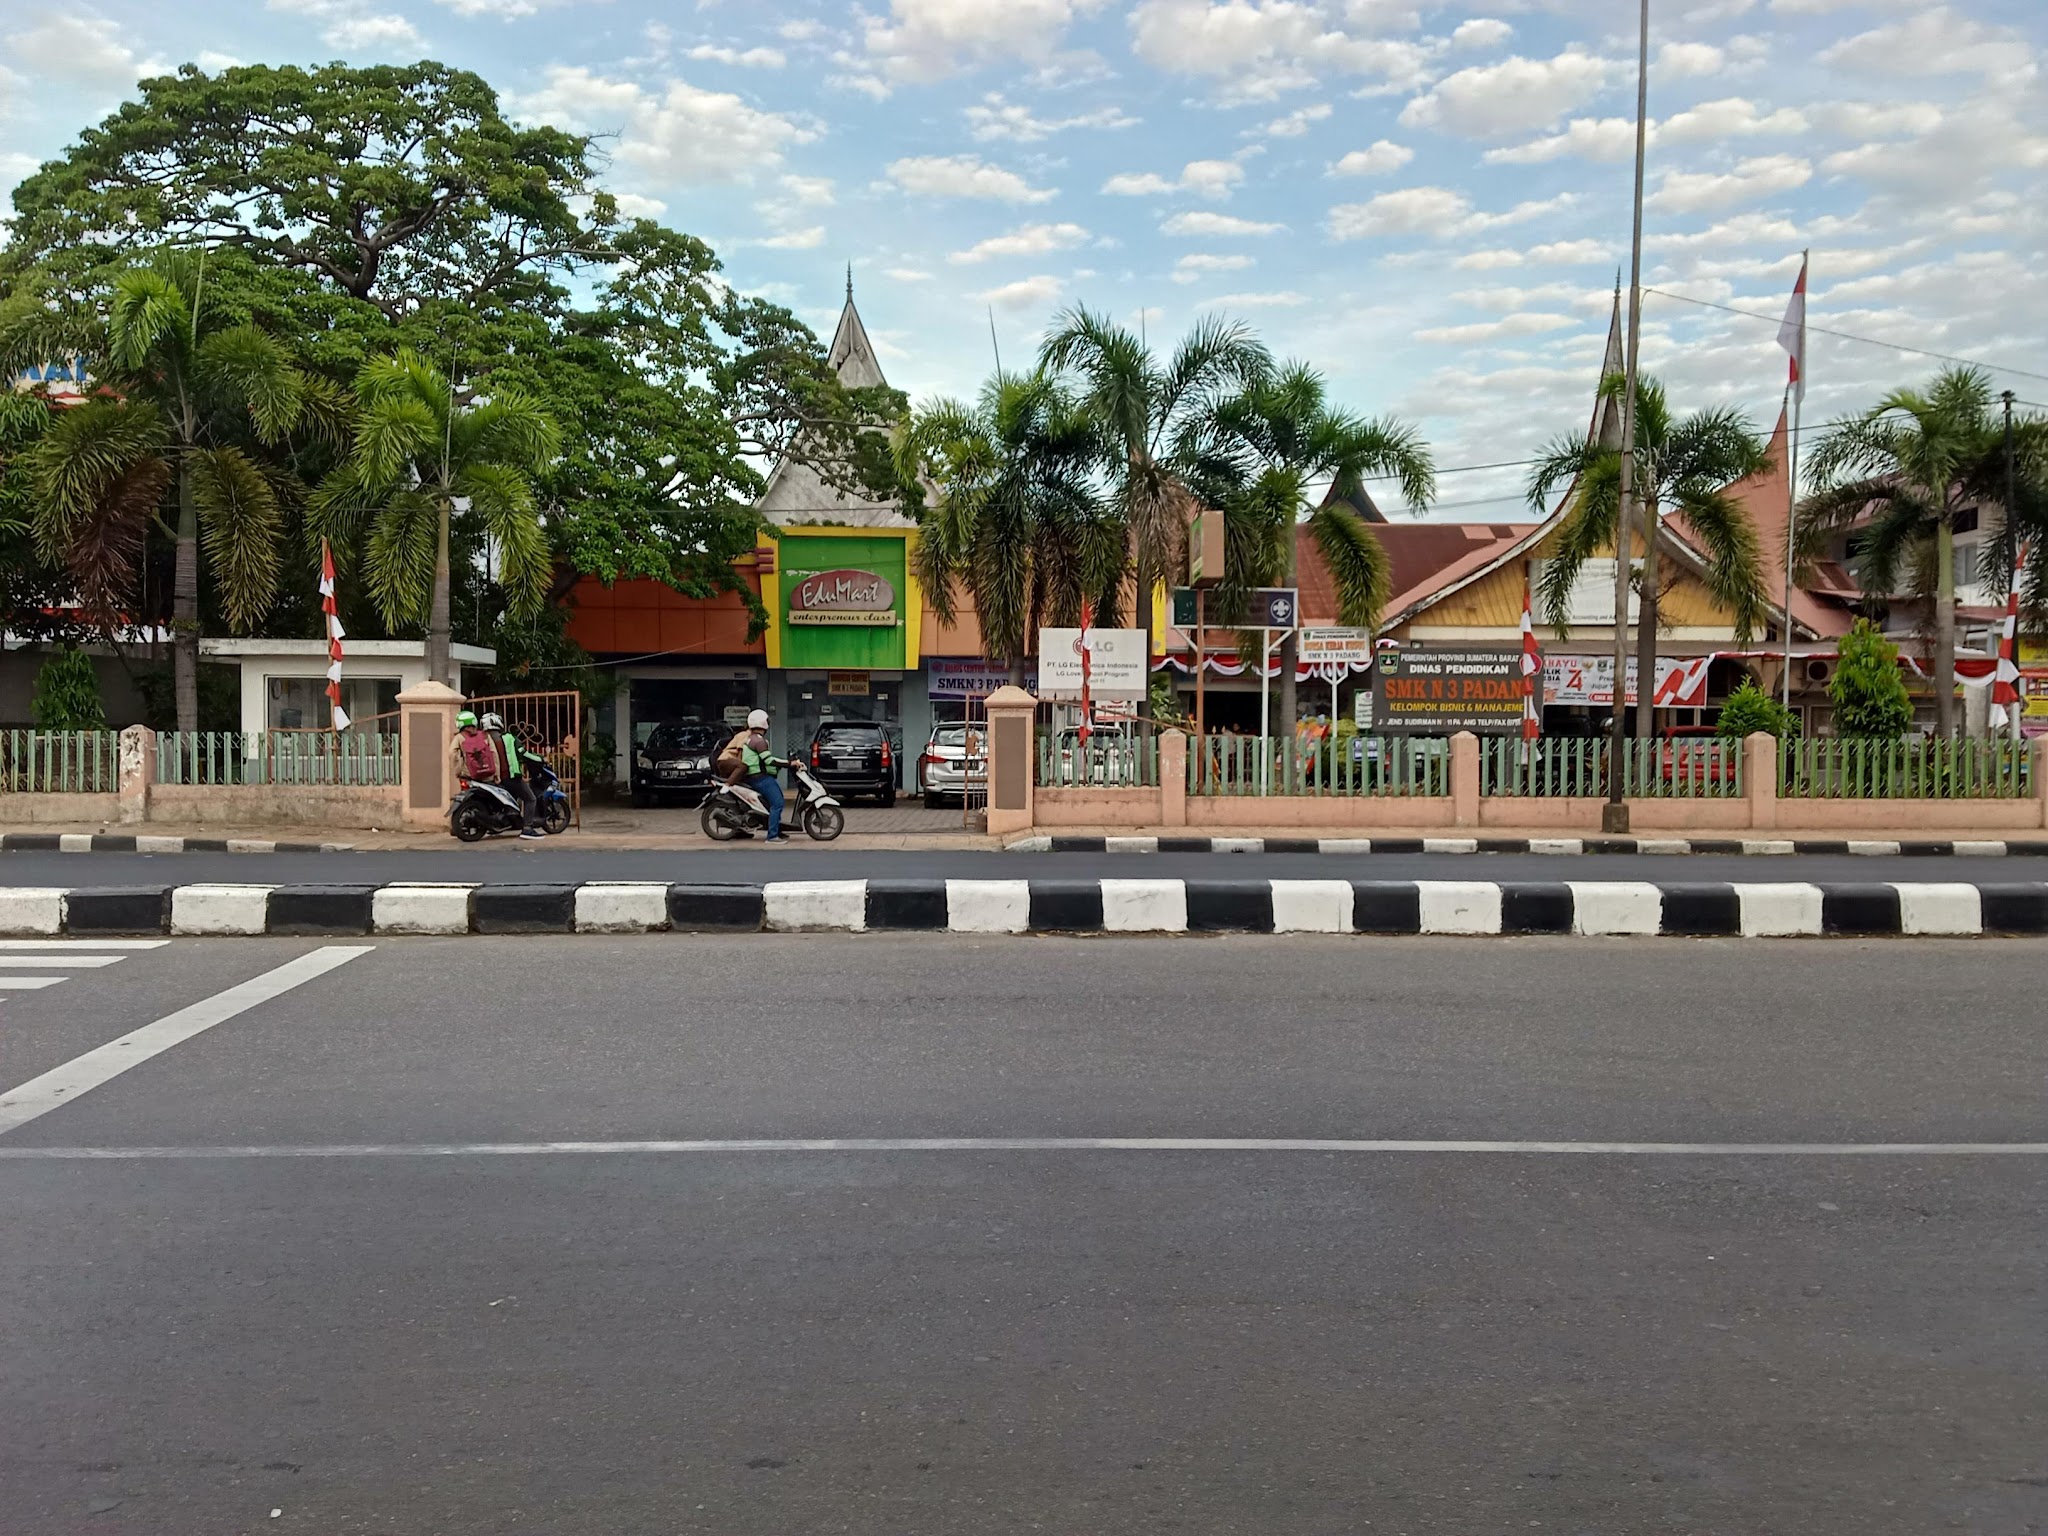 Foto SMKN  3 Padang, Kota Padang